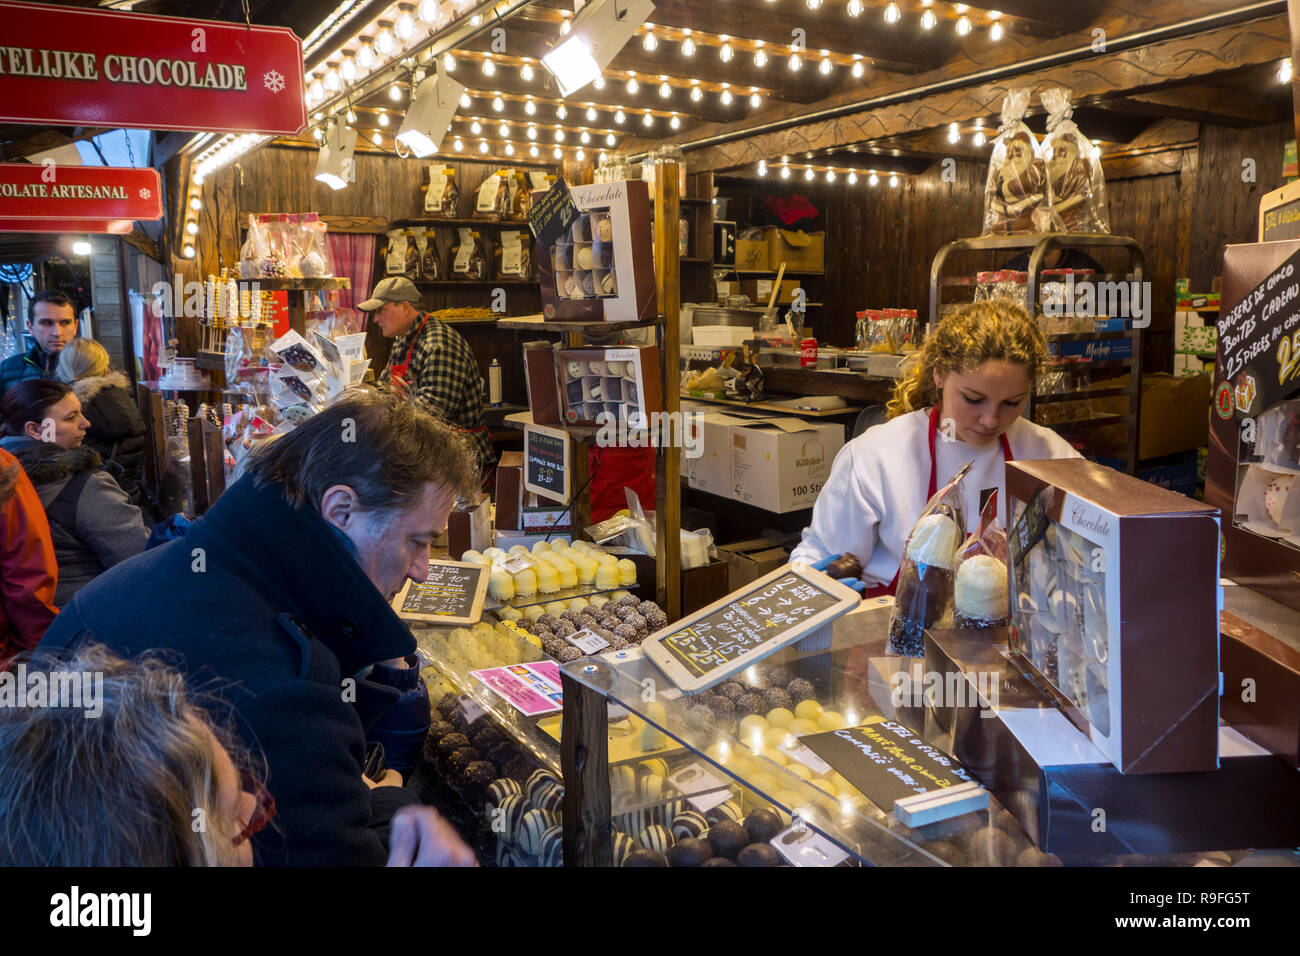 Les vendeurs de rue vendant du chocolat belge / chocolats en décrochage du marché de Noël en hiver dans la ville de Gand, Flandre orientale, Belgique Banque D'Images